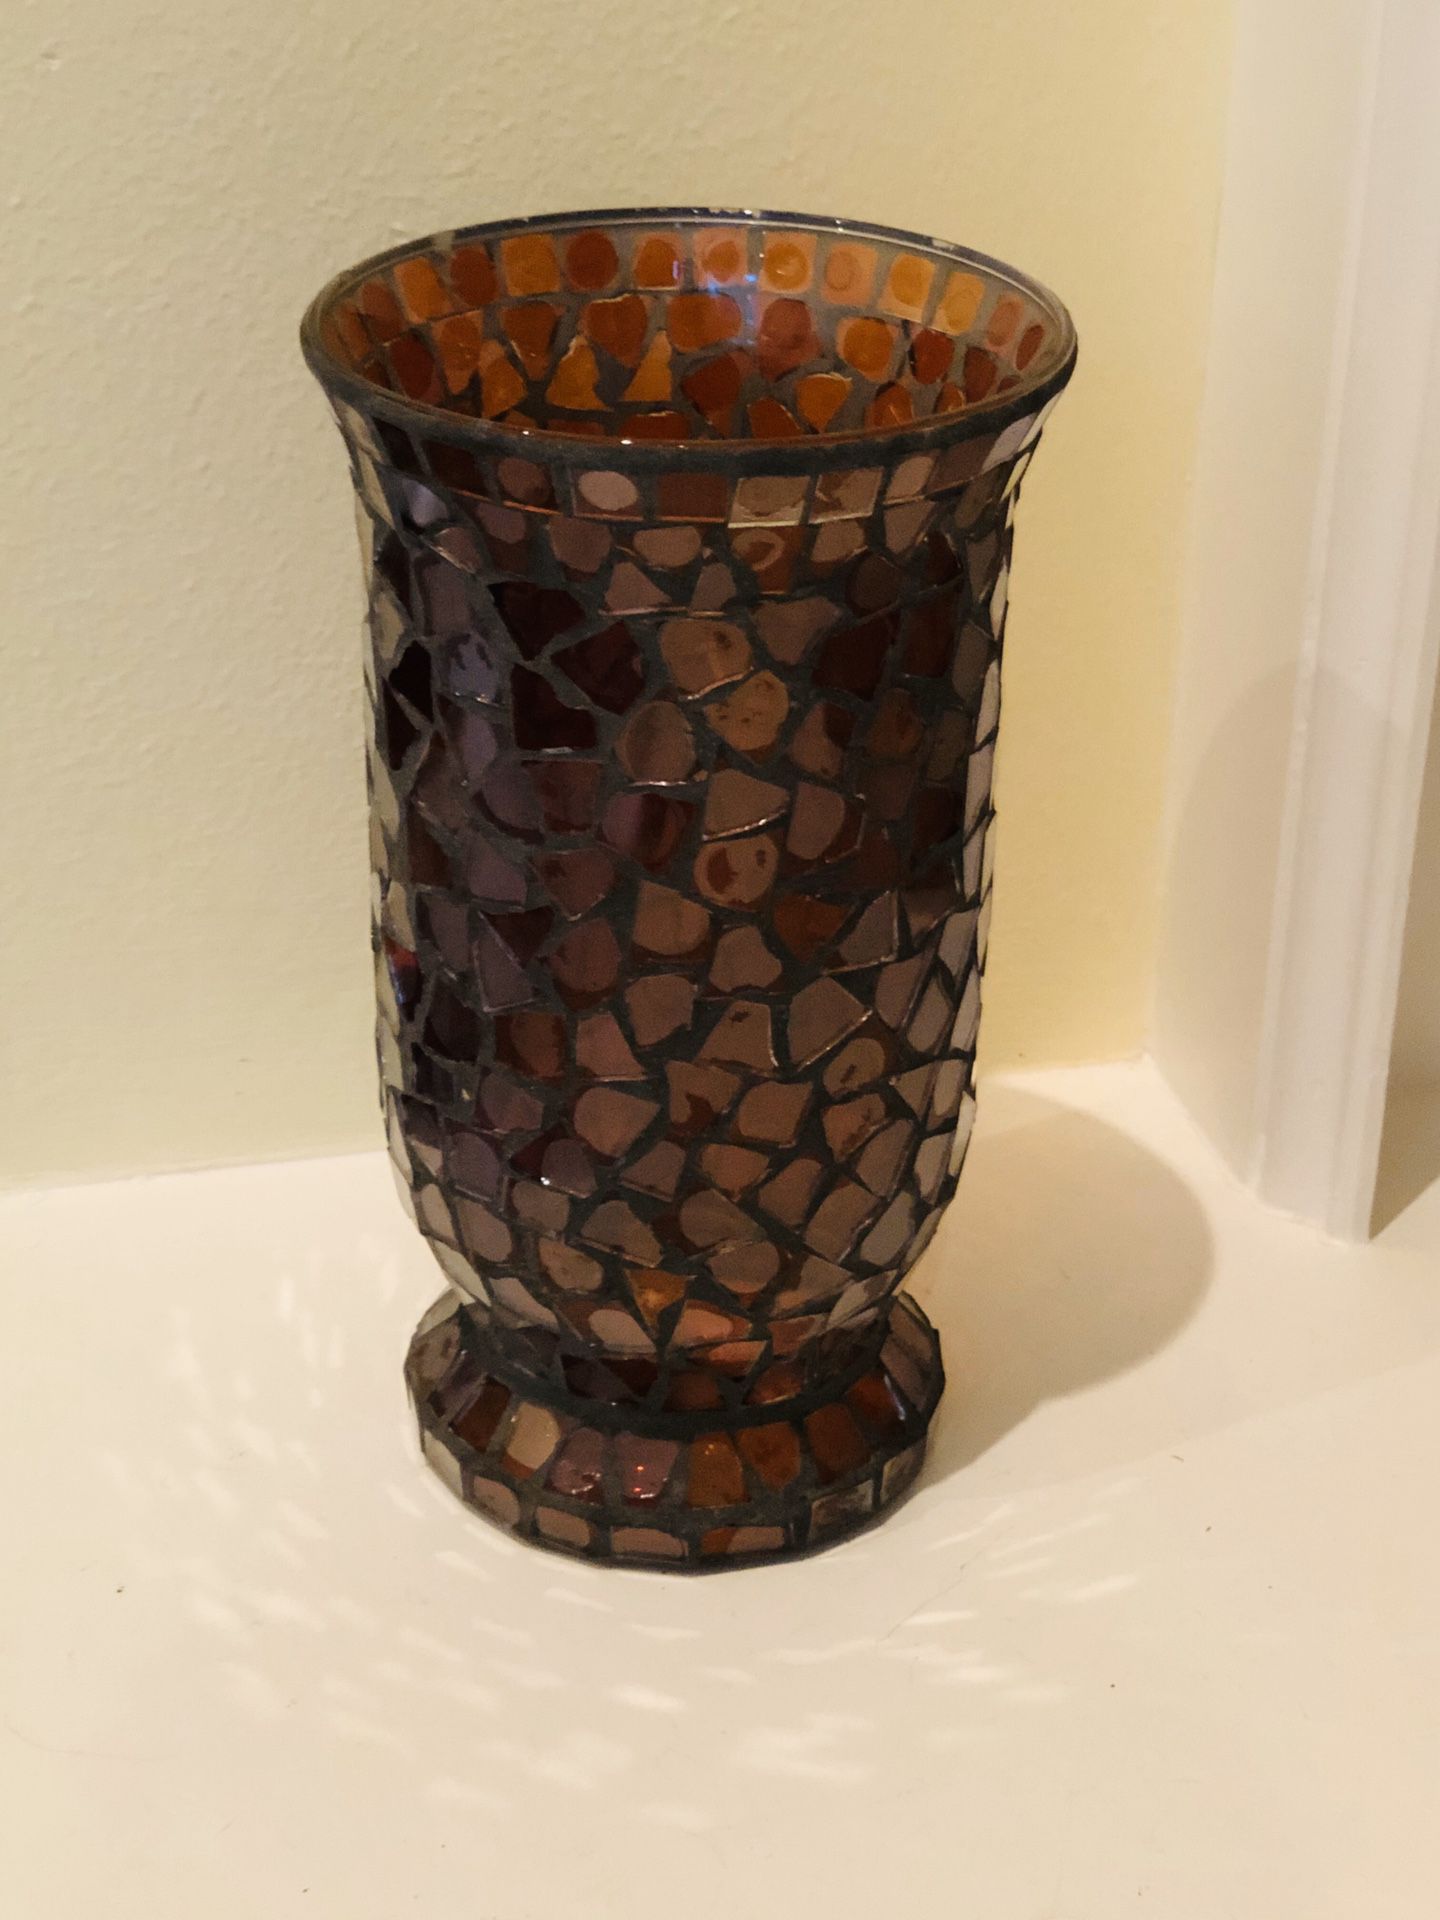 Large 10” mosaic glass vase/candle holder